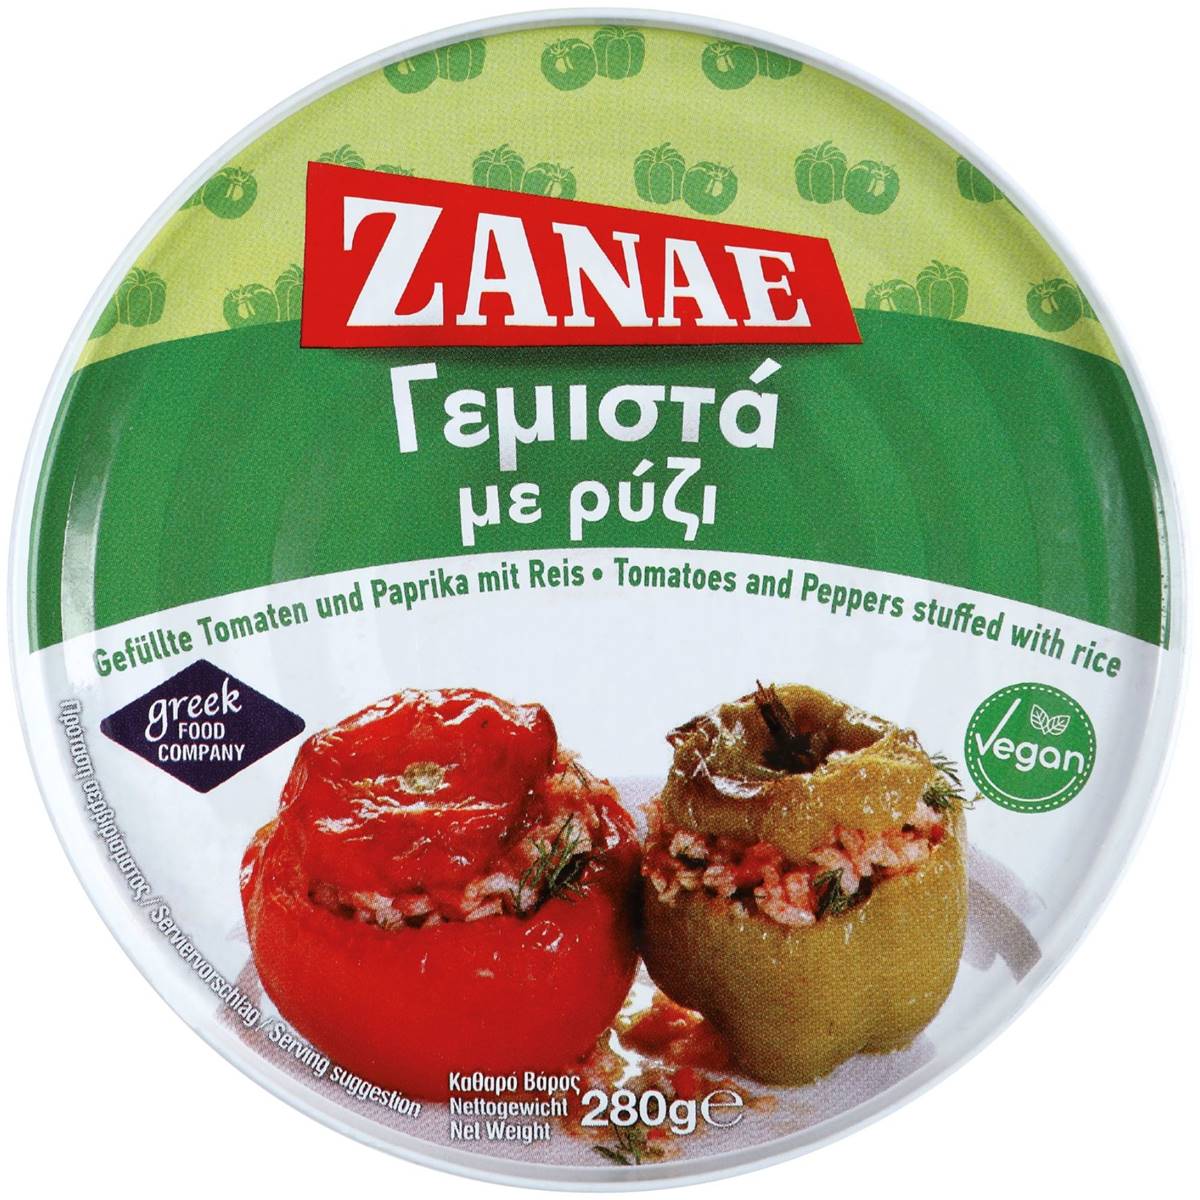 Gefüllte Tomaten & Paprika mit Reis Zanae 280g